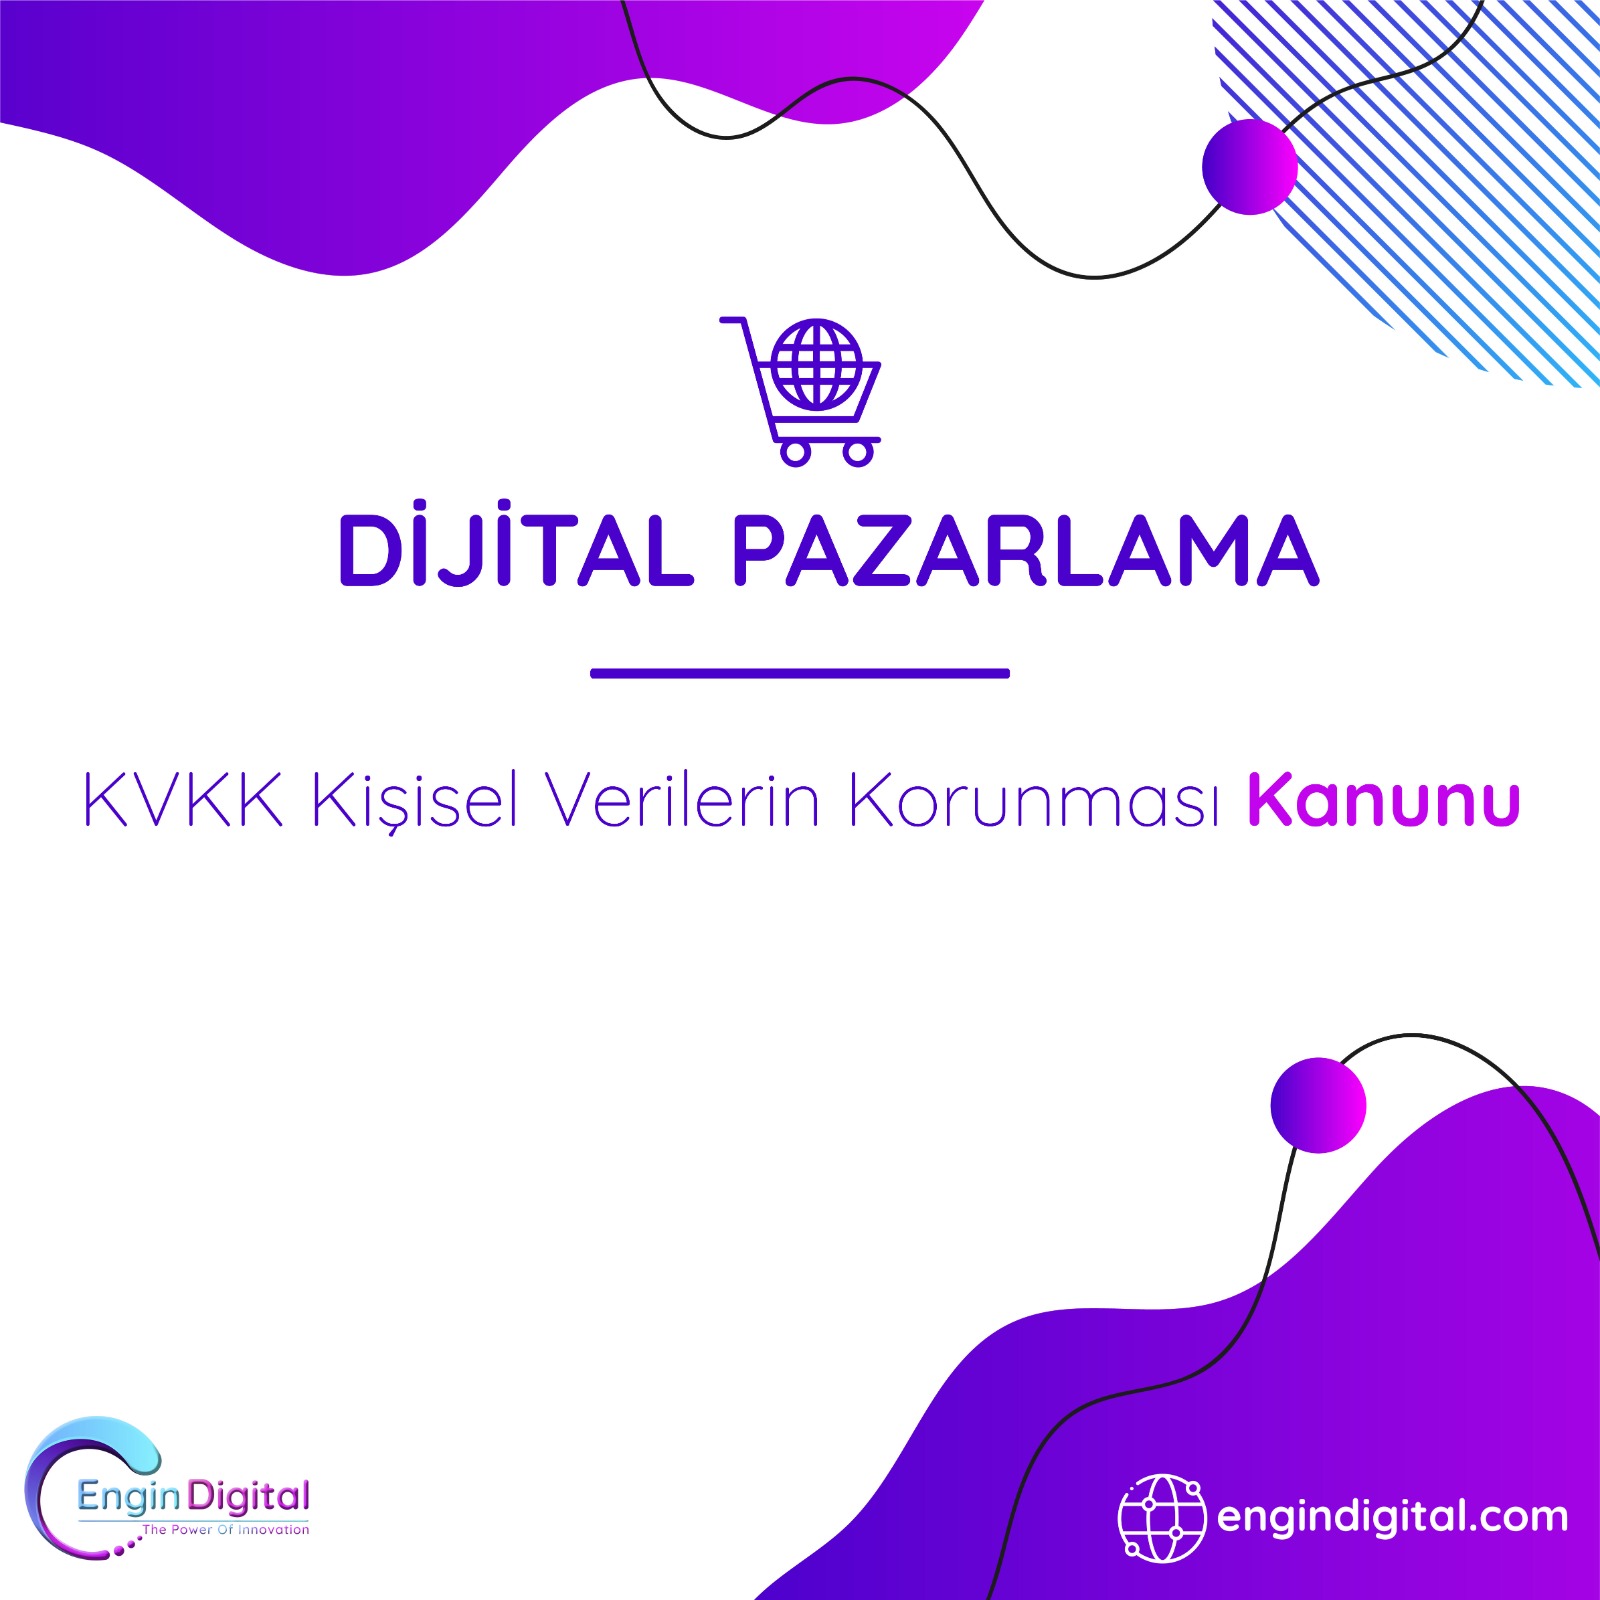 KVKK Kişisel Verilerin Korunması Kanunu - Dijital Pazarlama